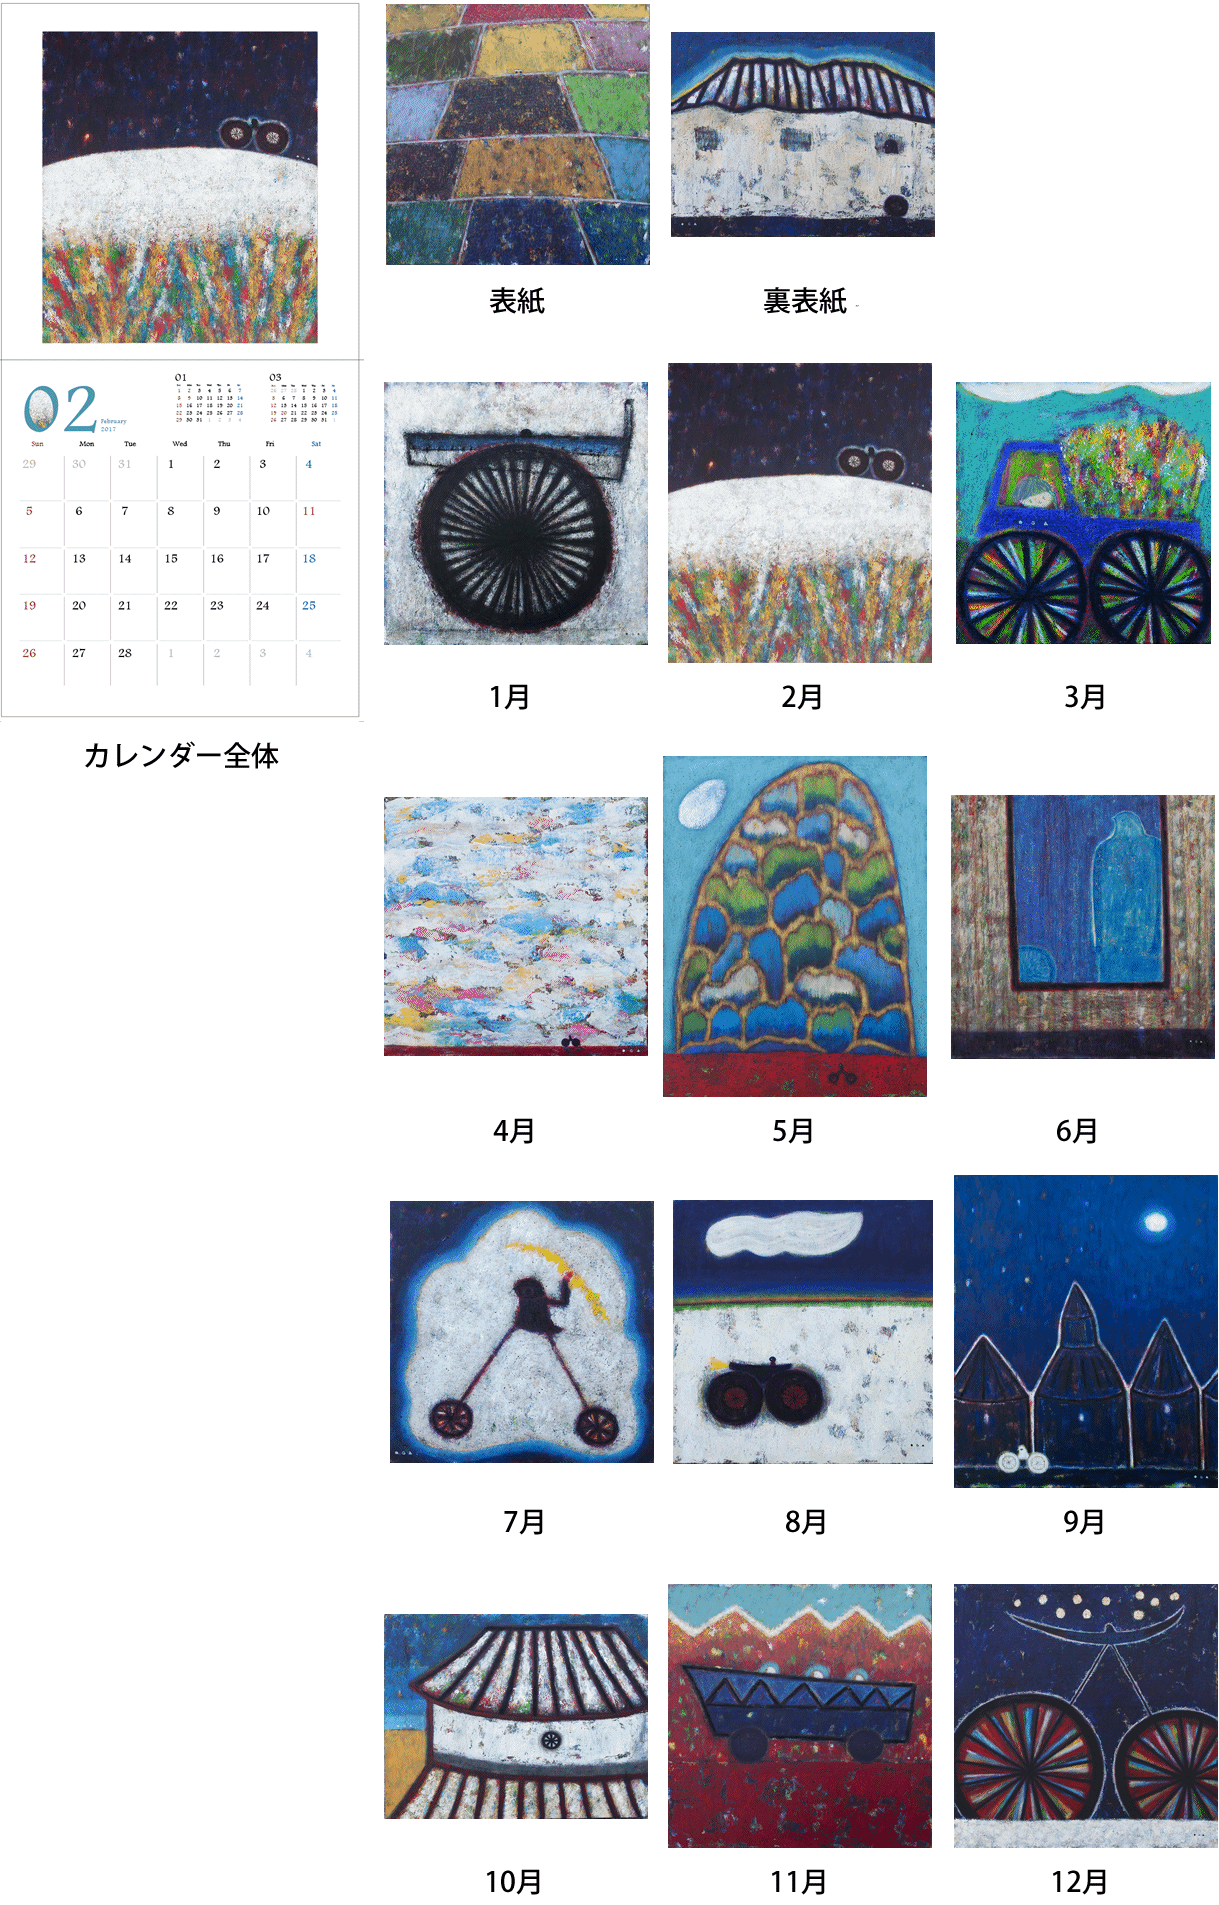 オーガフミヒロ2017カレンダー いつき美術画廊